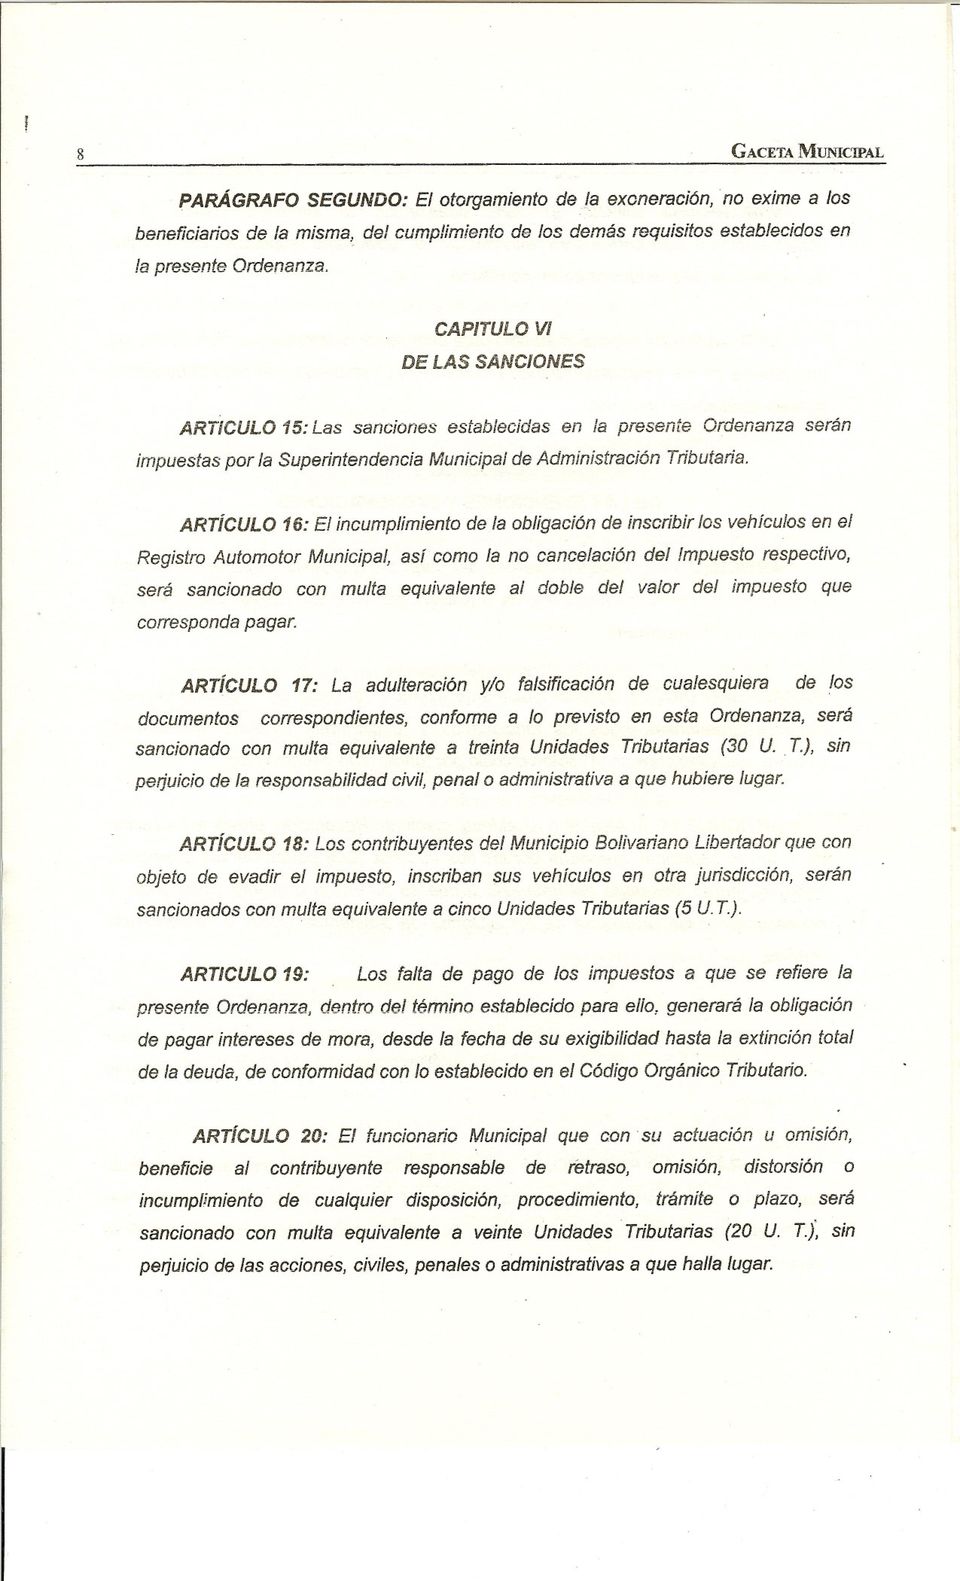 ARTíCULO 16: El incumplimiento de la obligación de inscribir los vehículos en el Registro Automotor Municipal, así como la no cancelación del mpuesto respectivo, será sancionado con multa equivalente